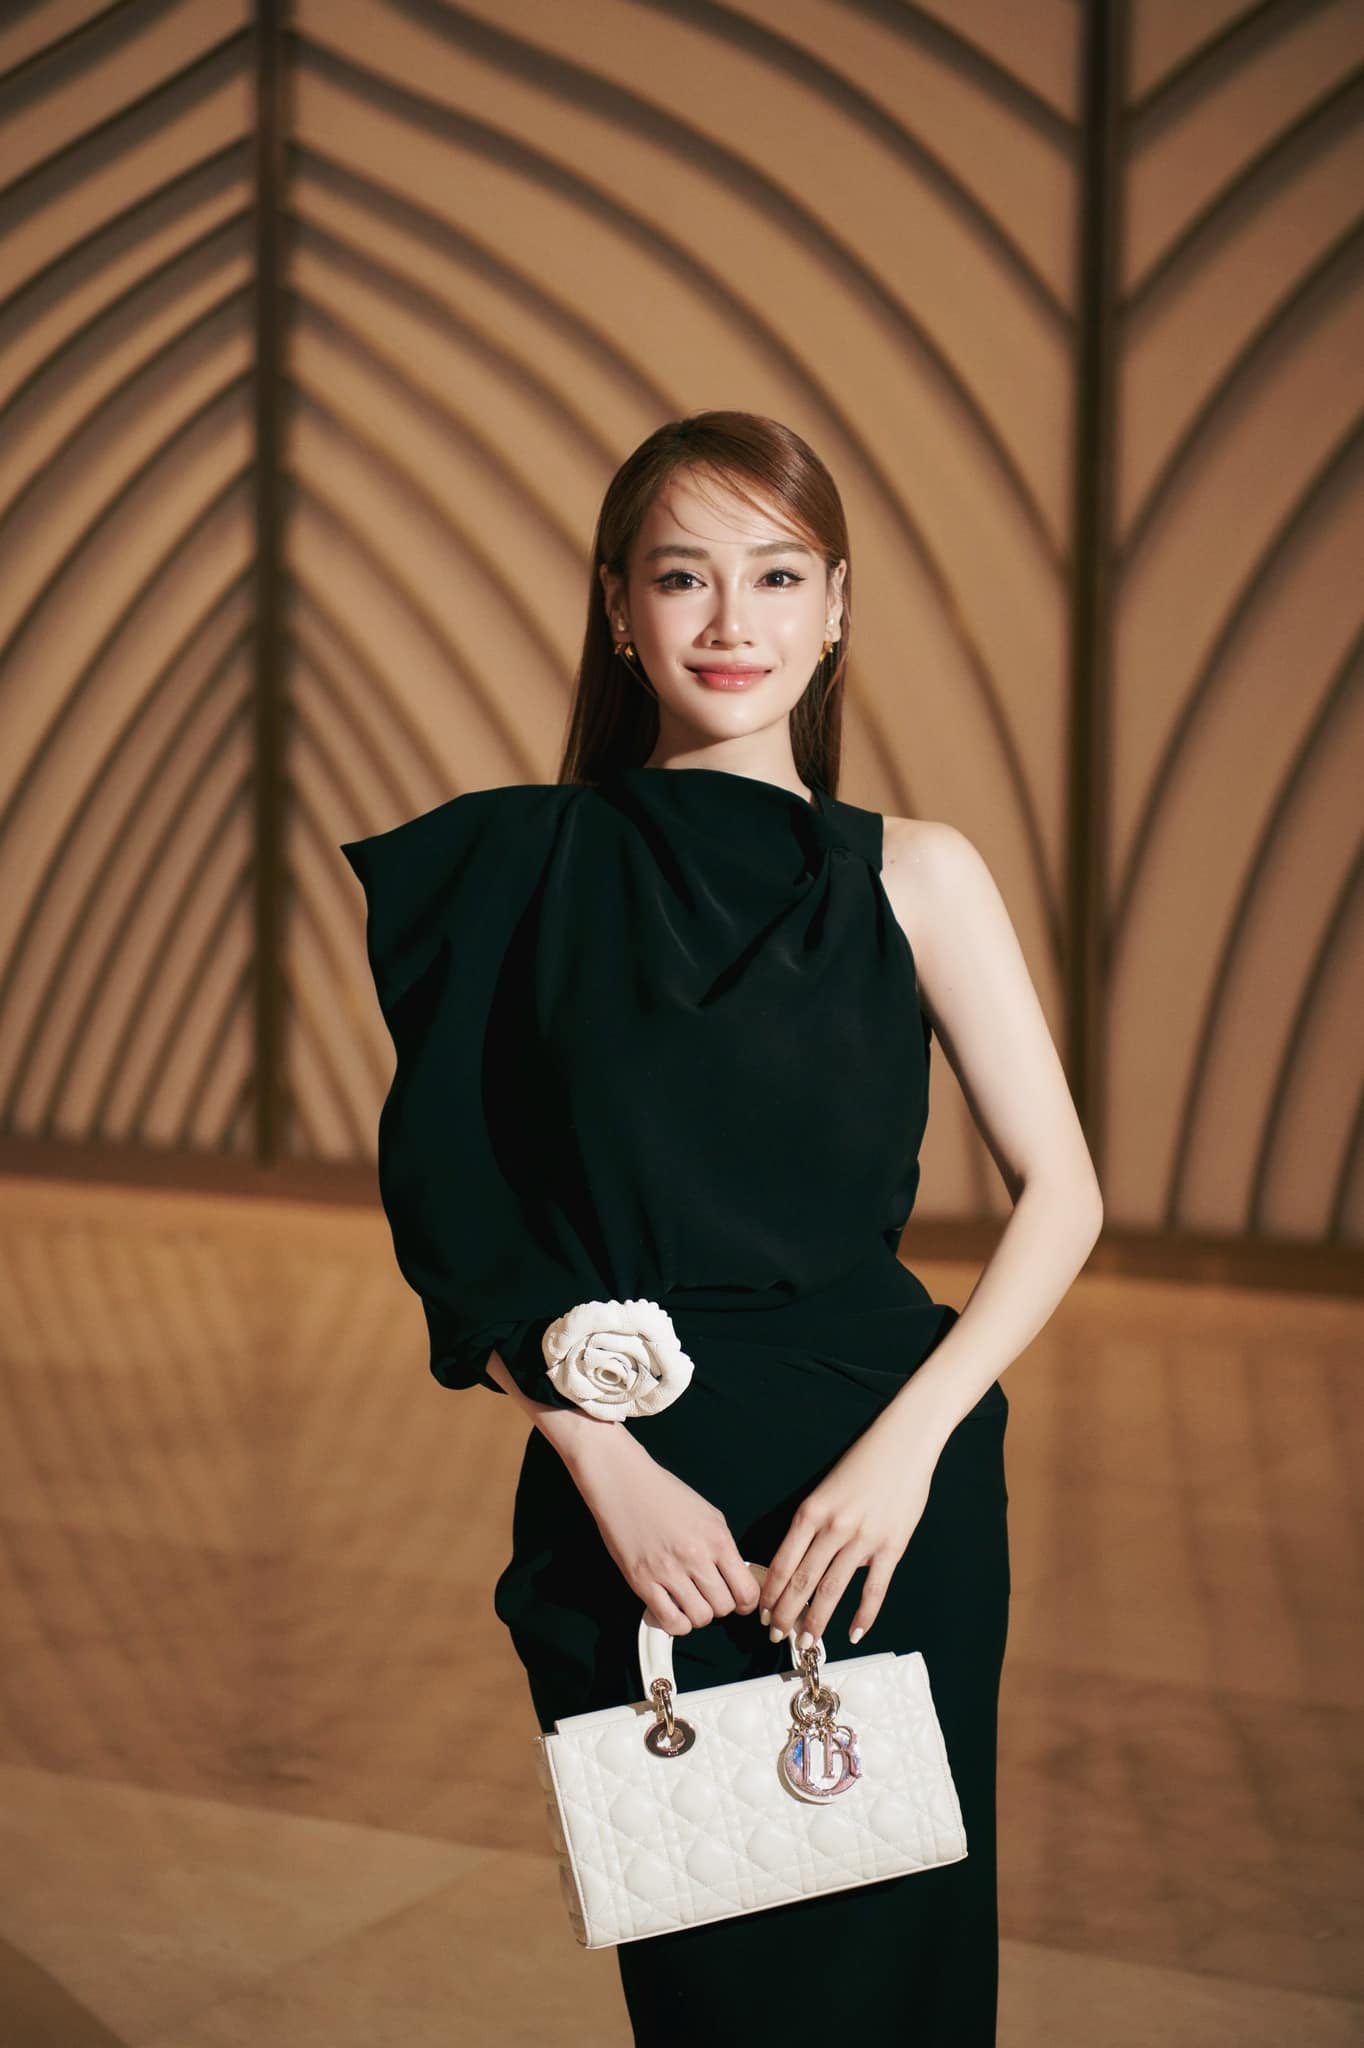 Mới đây khi dự đám cưới siêu mẫu Minh Tú, Nhã Phương gây chú ý khi diện chiếc túi Medium Lady D-Joy Bag màu trắng với họa tiết quả trám đặc trưng của nhà mốt Pháp, có giá khoảng 145 triệu đồng.